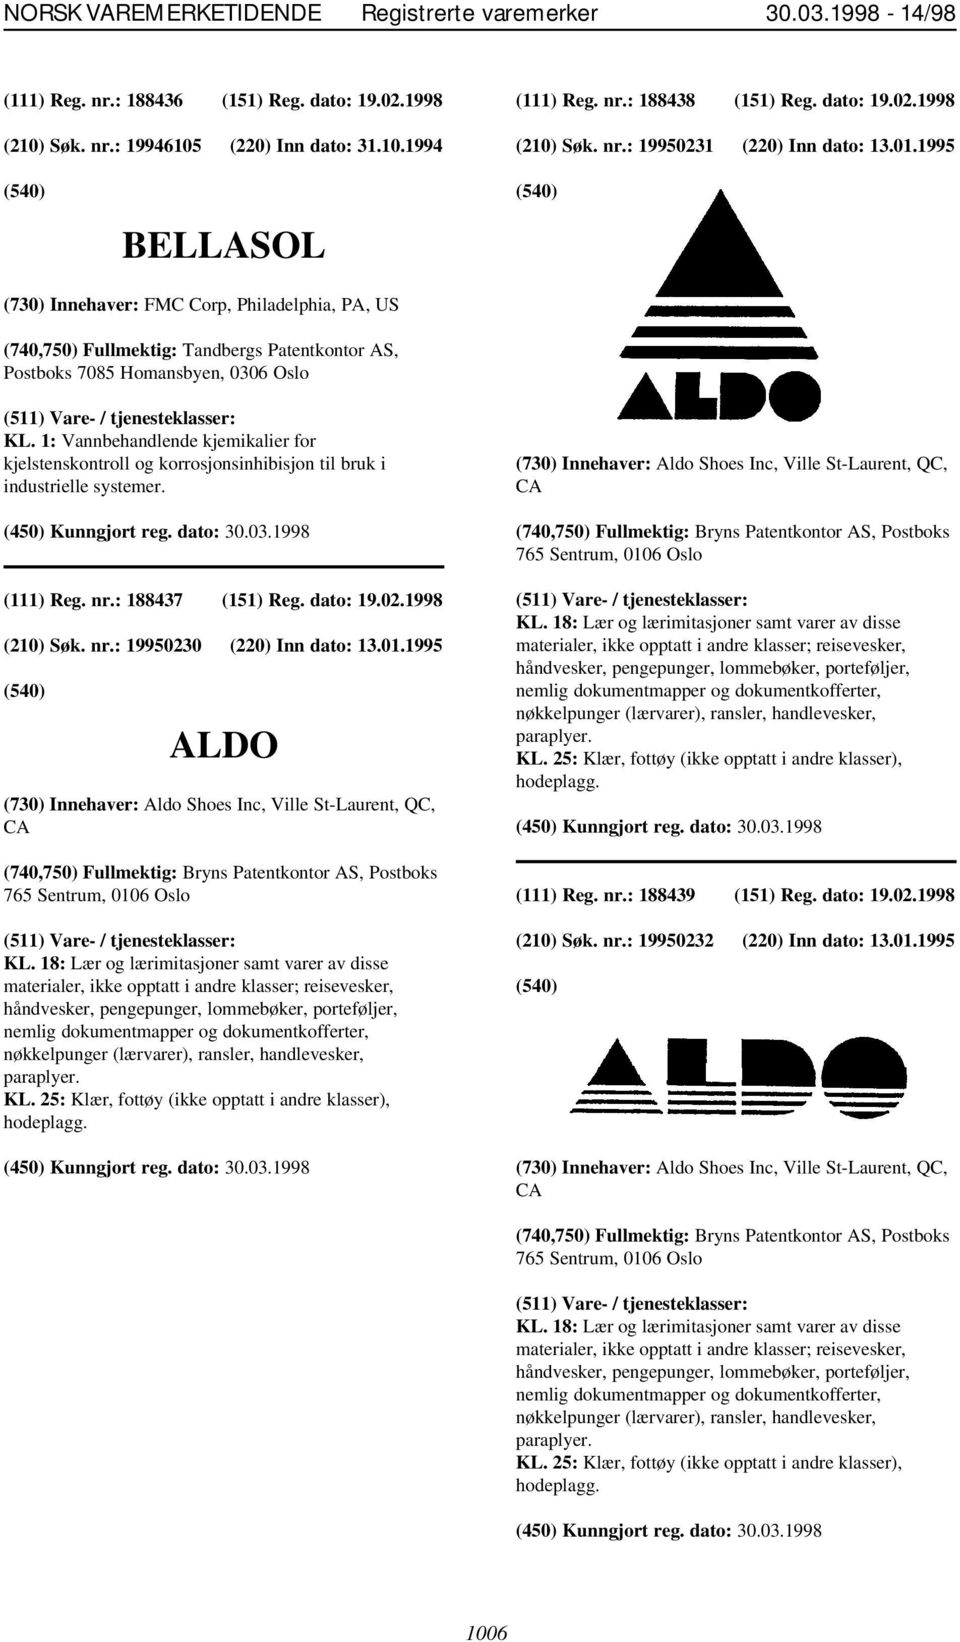 : 188437 (151) Reg. dato: 19.02.1998 (210) Søk. nr.: 19950230 (220) Inn dato: 13.01.1995 ALDO (730) Innehaver: Aldo Shoes Inc, Ville St-Laurent, QC, CA KL.